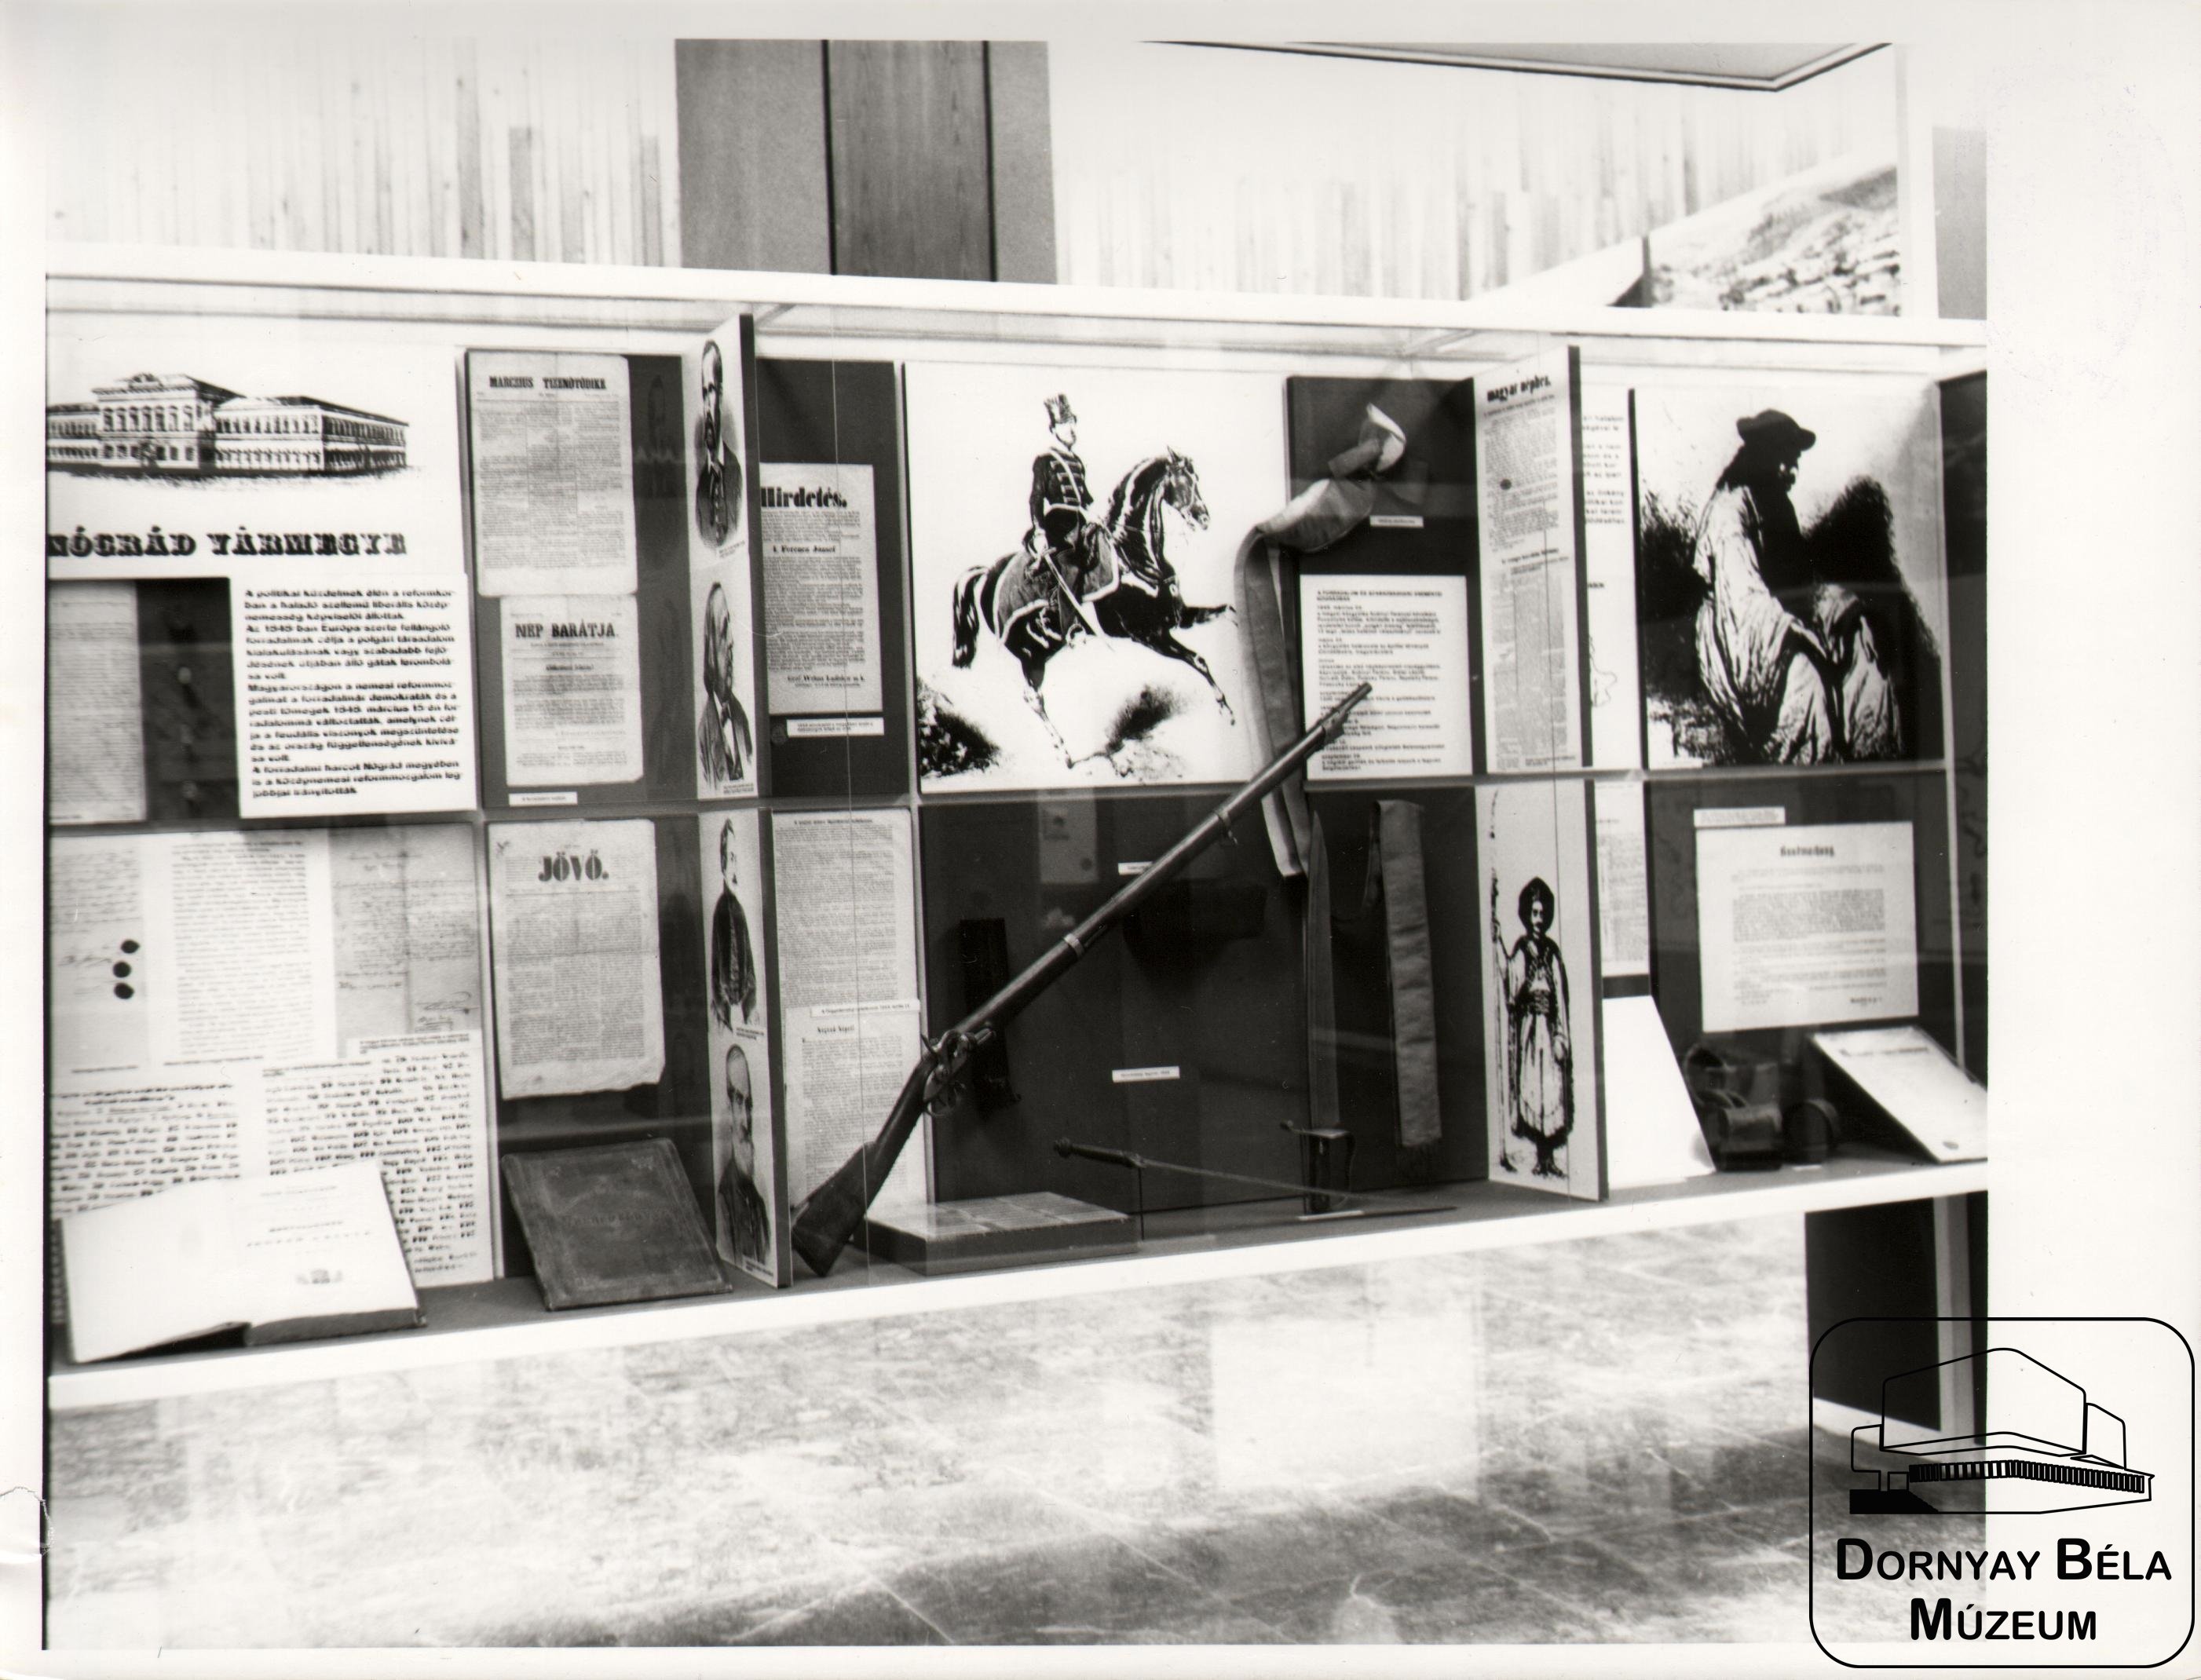 Munkásélet Nógrádban című állandó kiállítás részlete (Dornyay Béla Múzeum, Salgótarján CC BY-NC-SA)